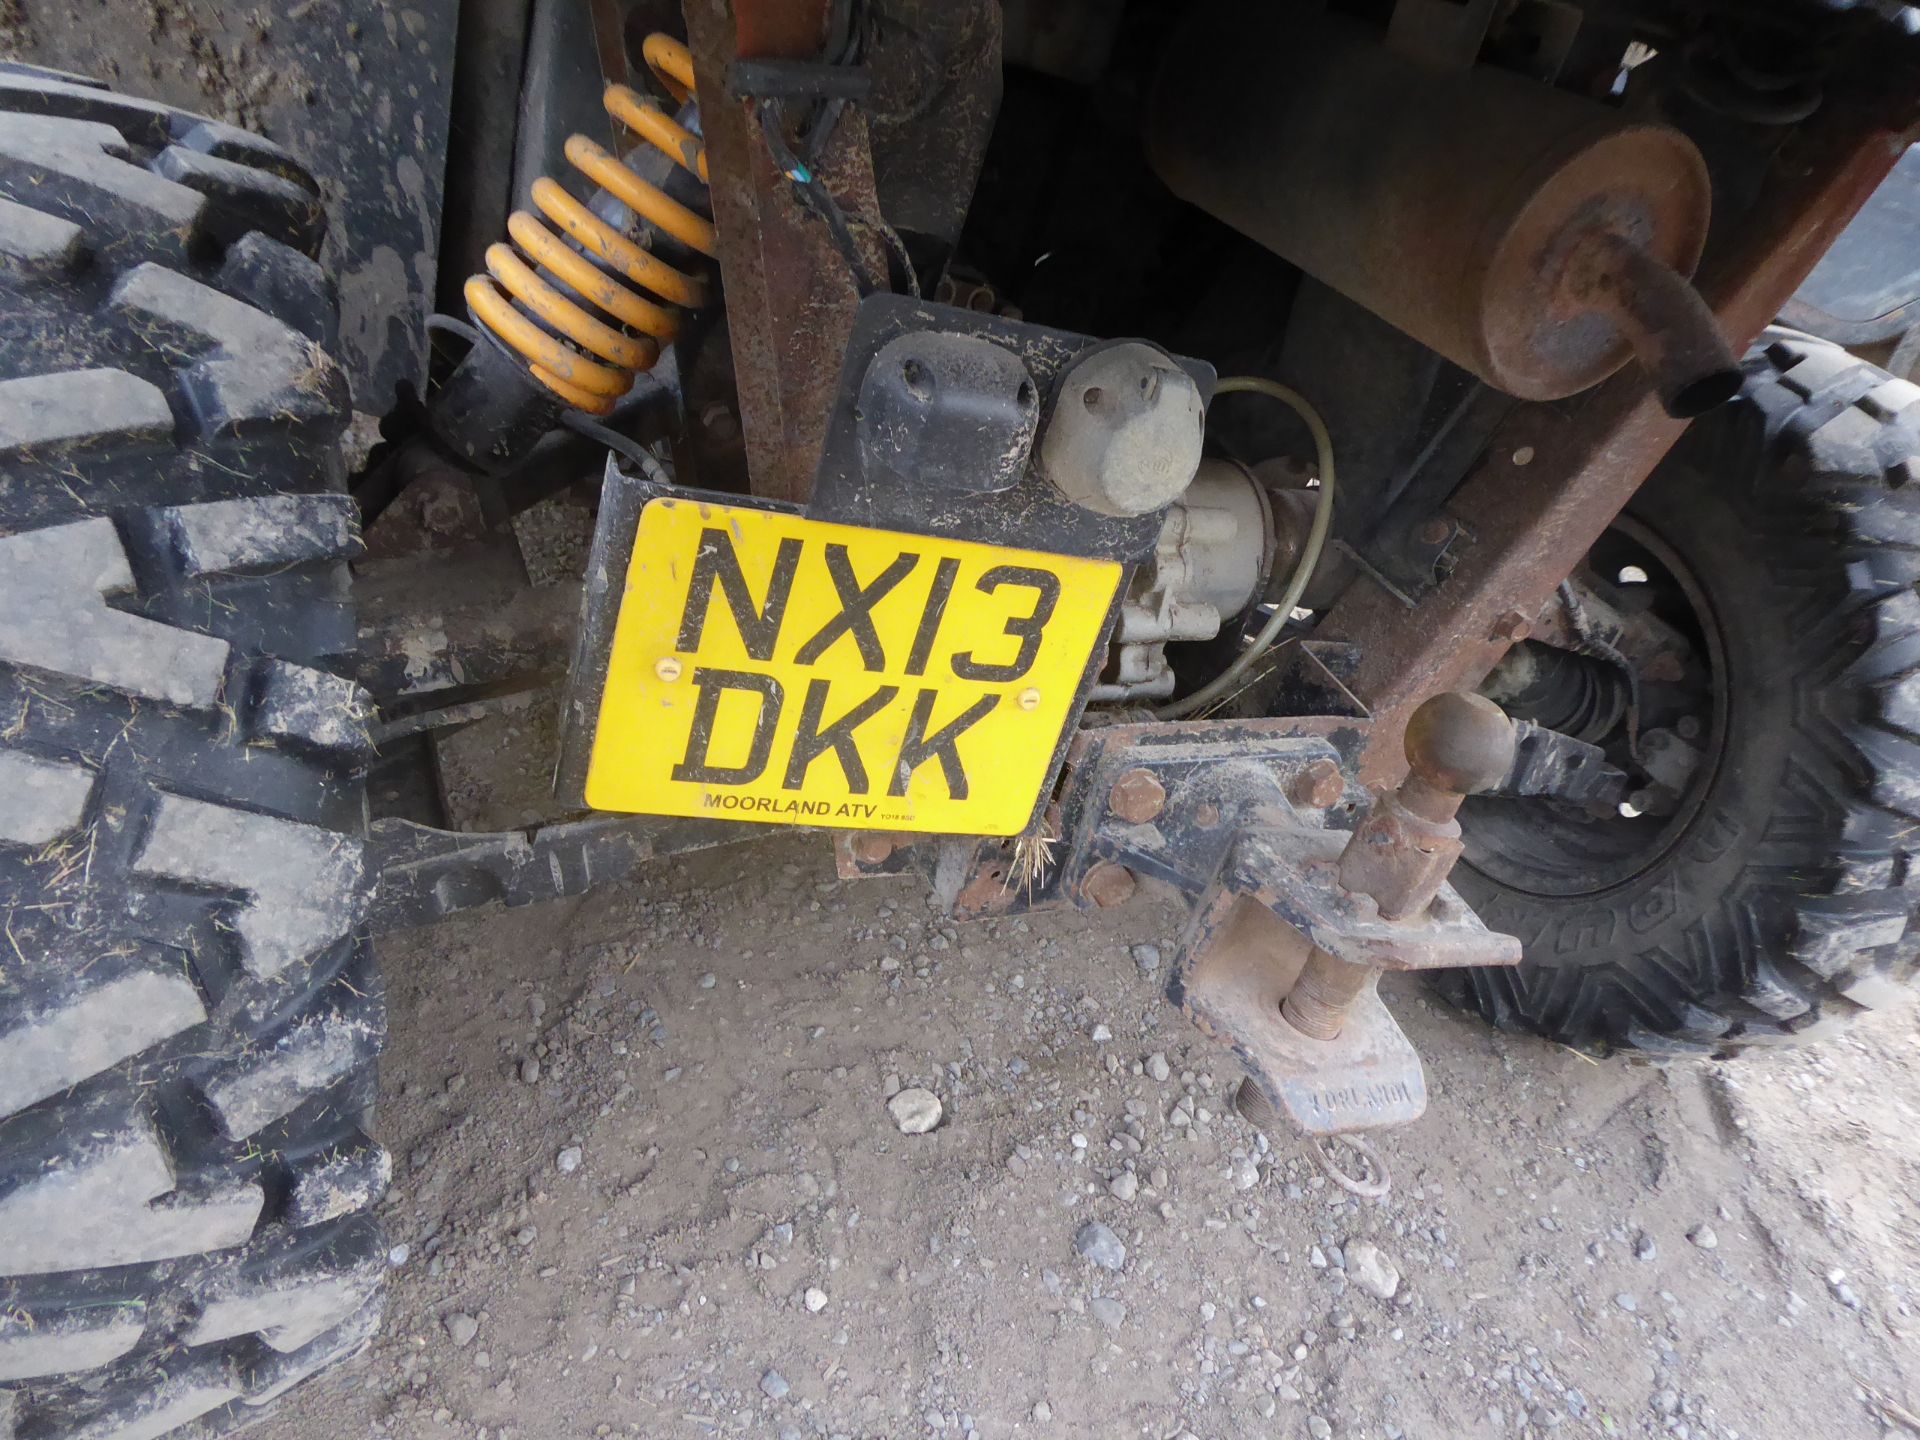 JCB Workmax 800 diesel, 2013, gwo, 20344 miles, NX13 DKK - Image 3 of 4